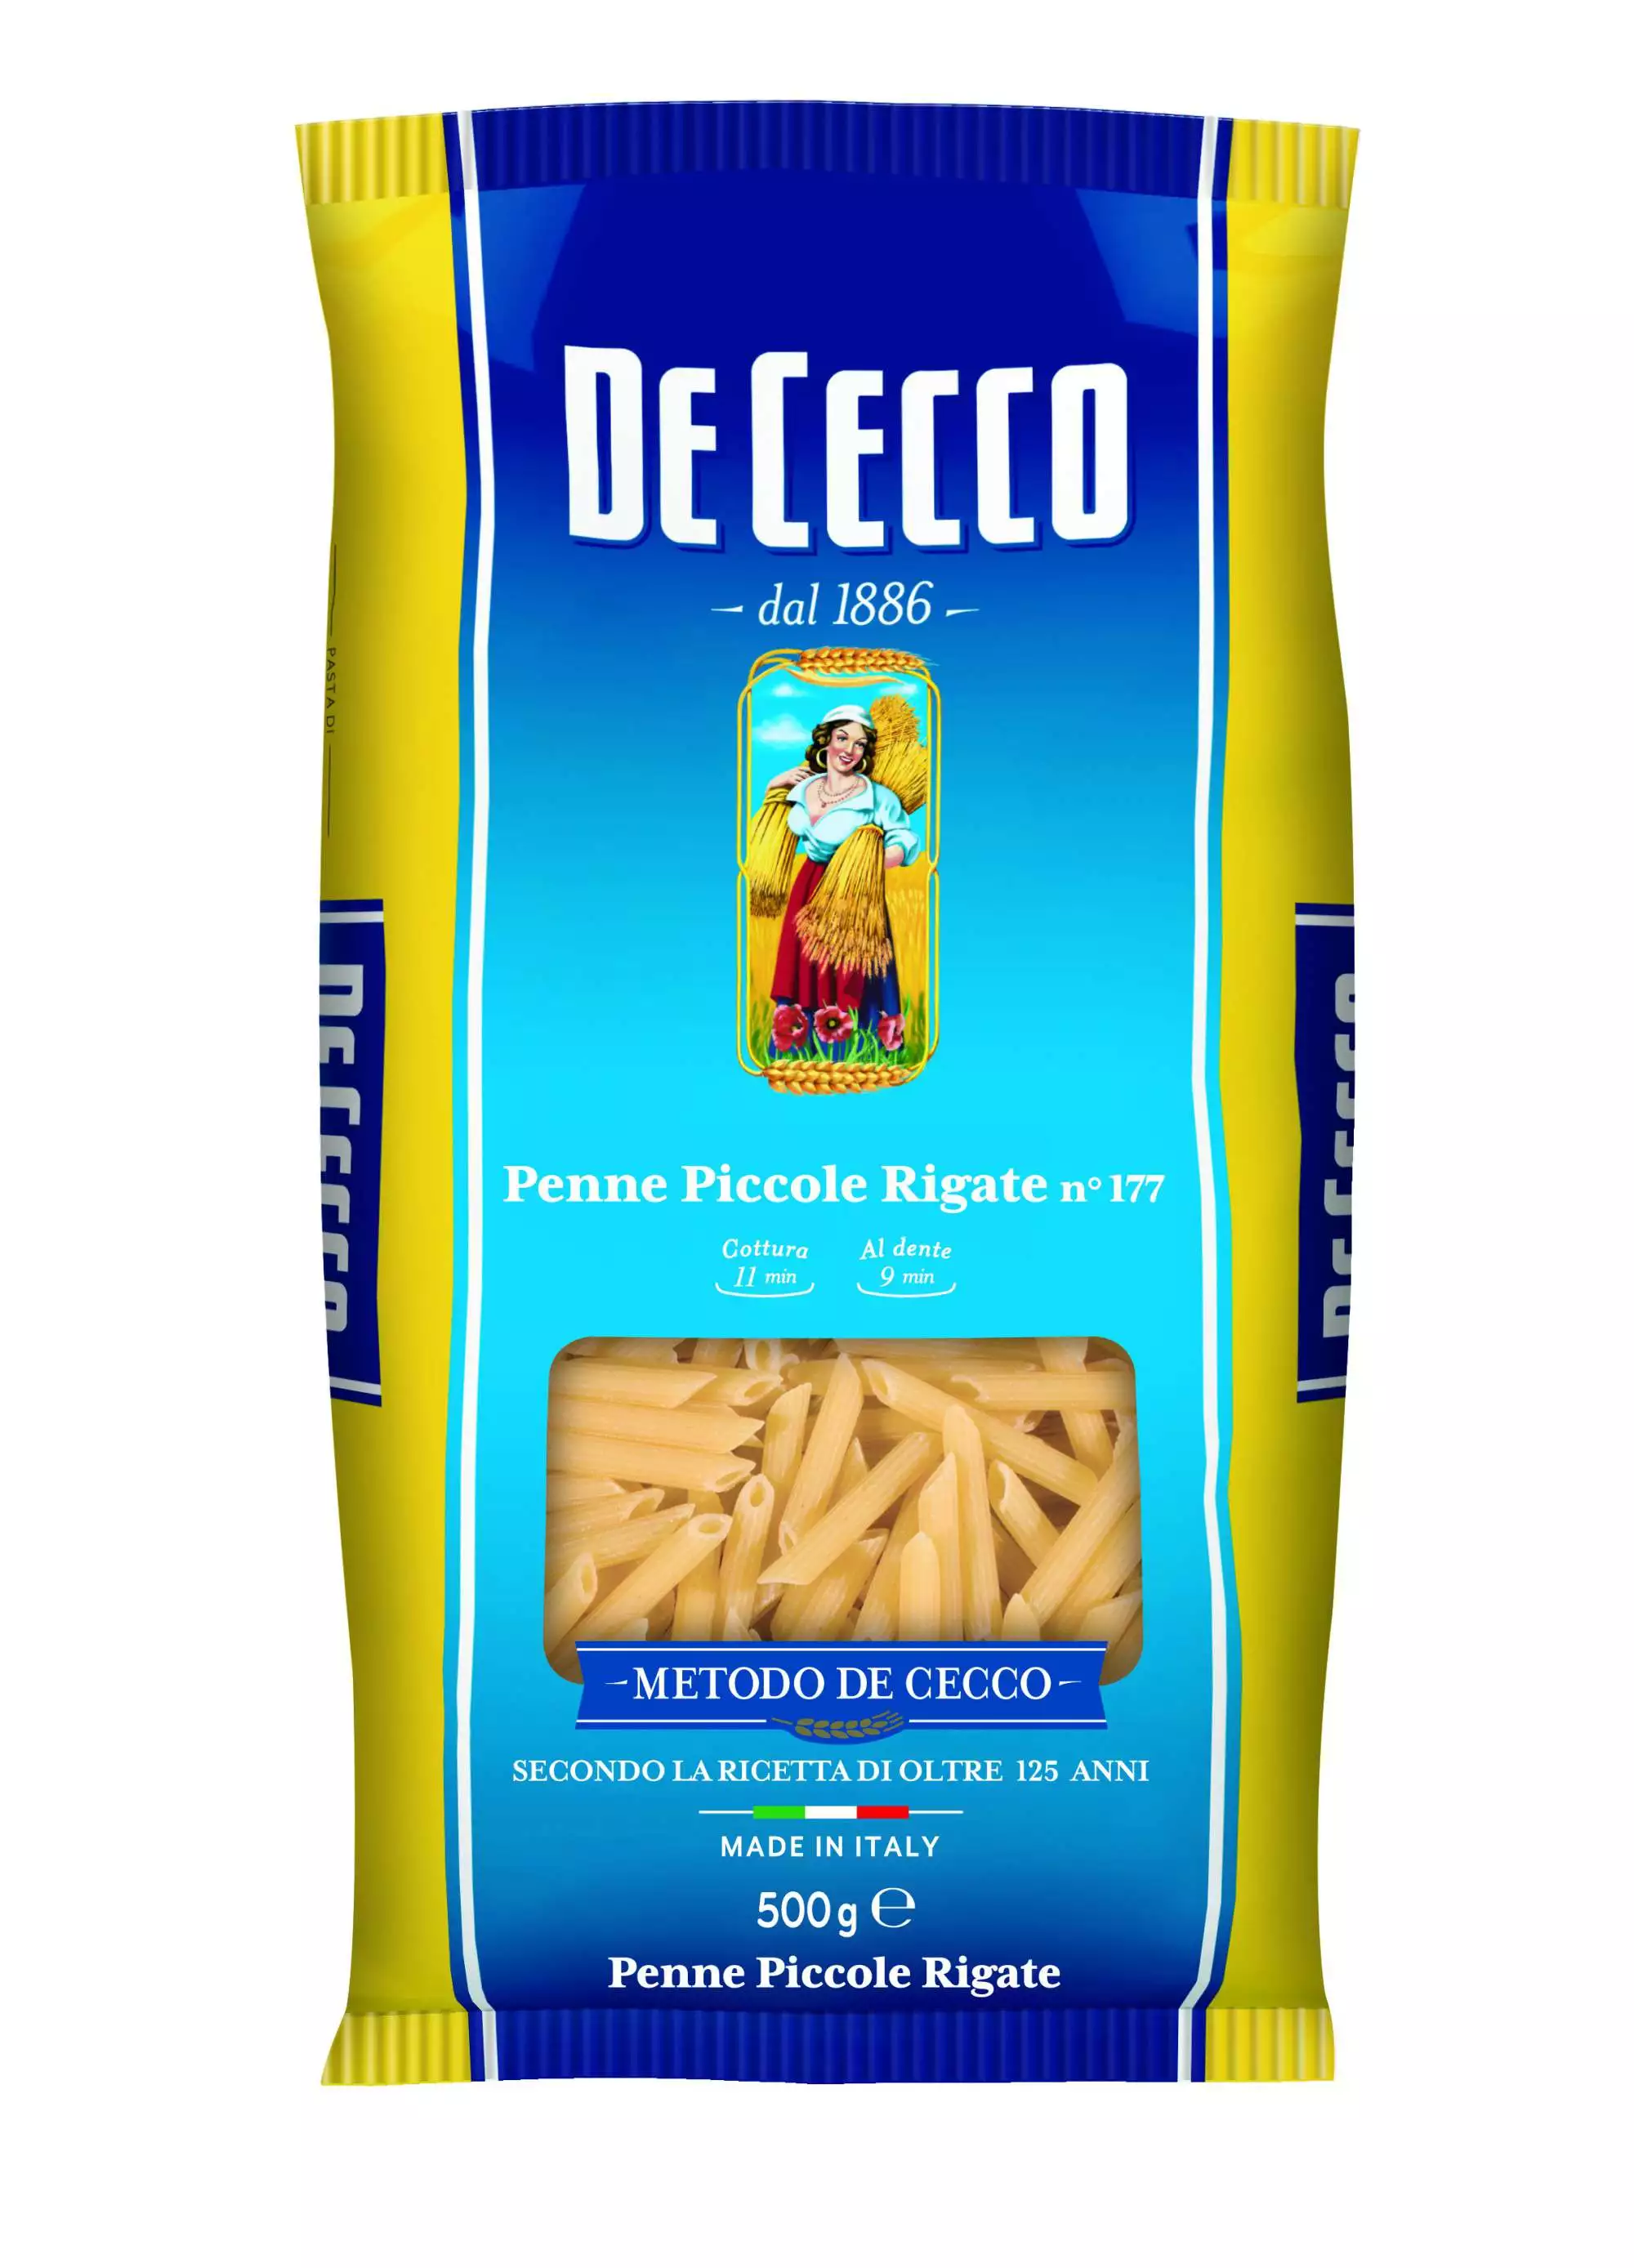 De Cecco Penne Piccole Rigate Pasta N177 500g